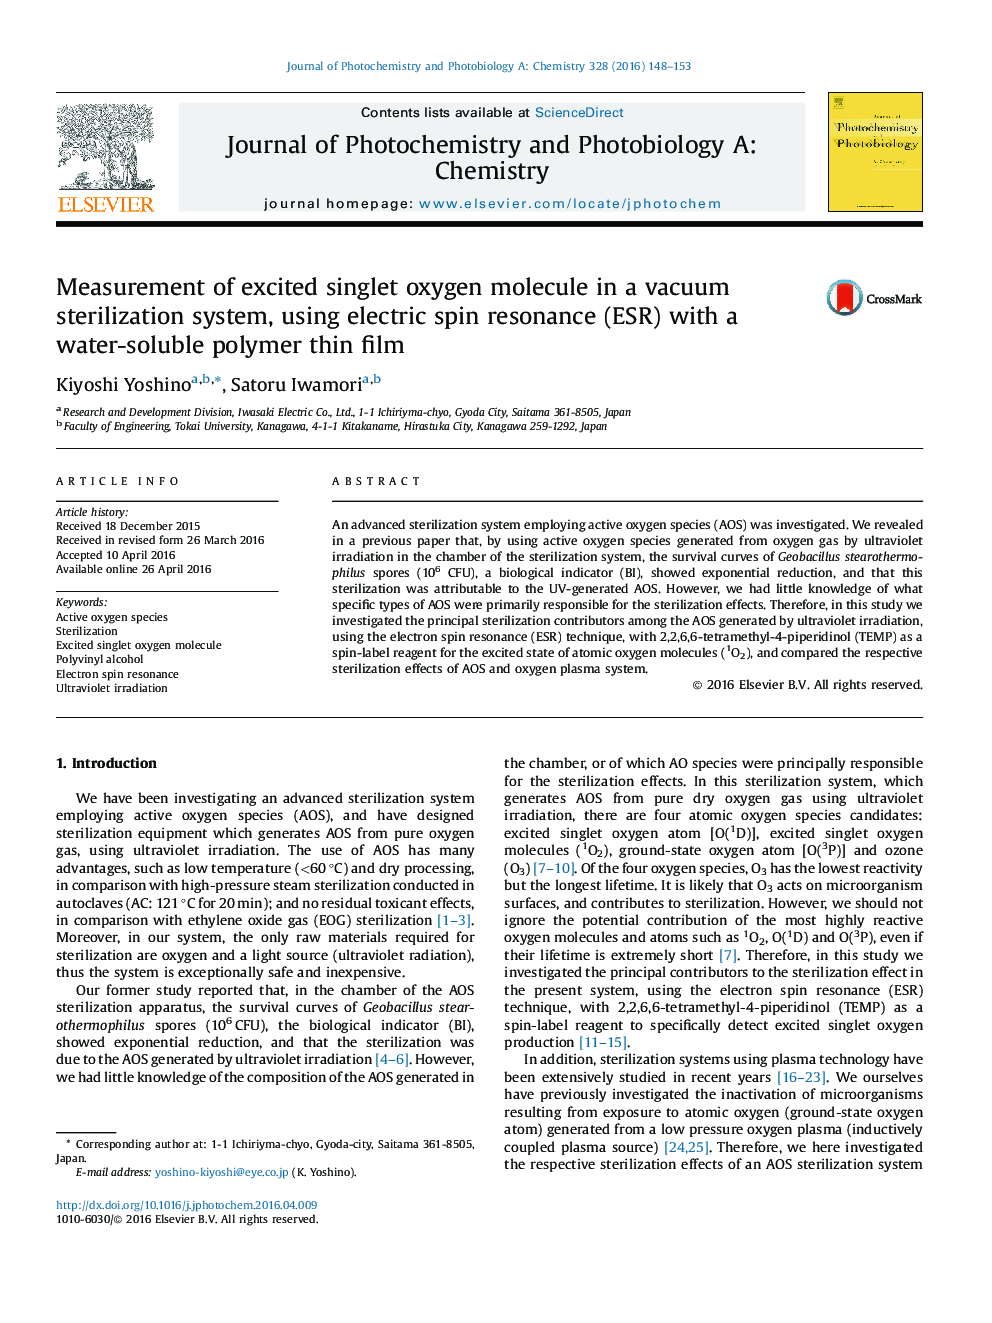 اندازه گیری مولکول اکسیژن مجزا در سیستم استریلیزه خلاء با استفاده از رزونانس اسپین الکتریکی (ESR) با یک فیلم نازک پلیمری محلول در آب